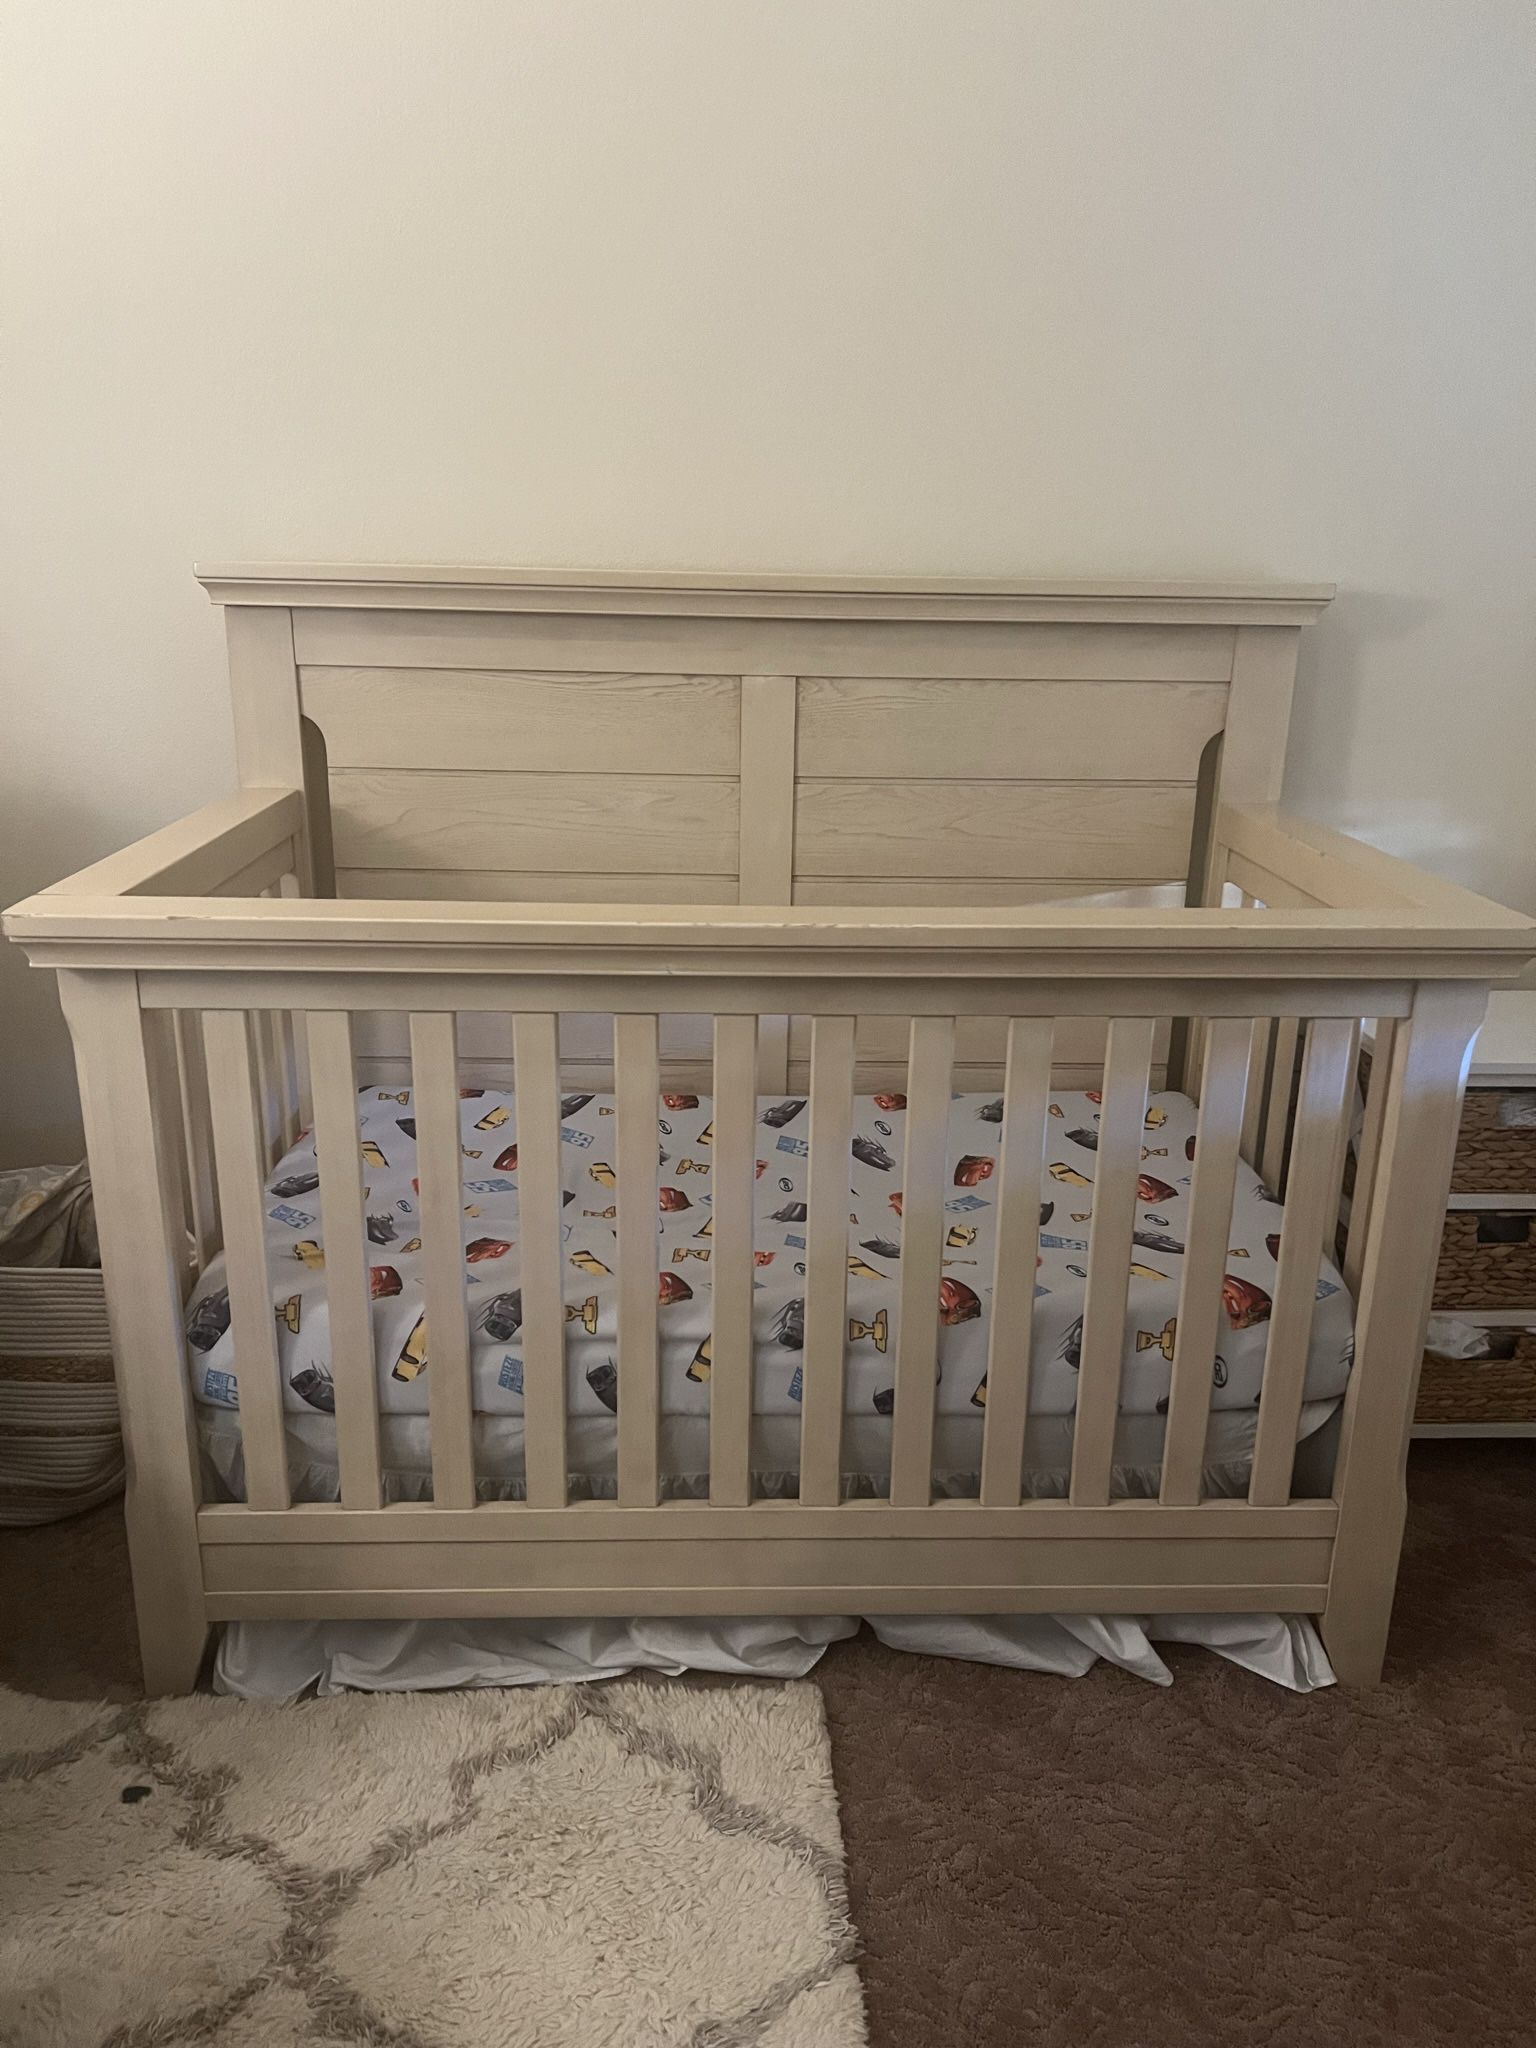 FREE Baby Cache Beige Crib 